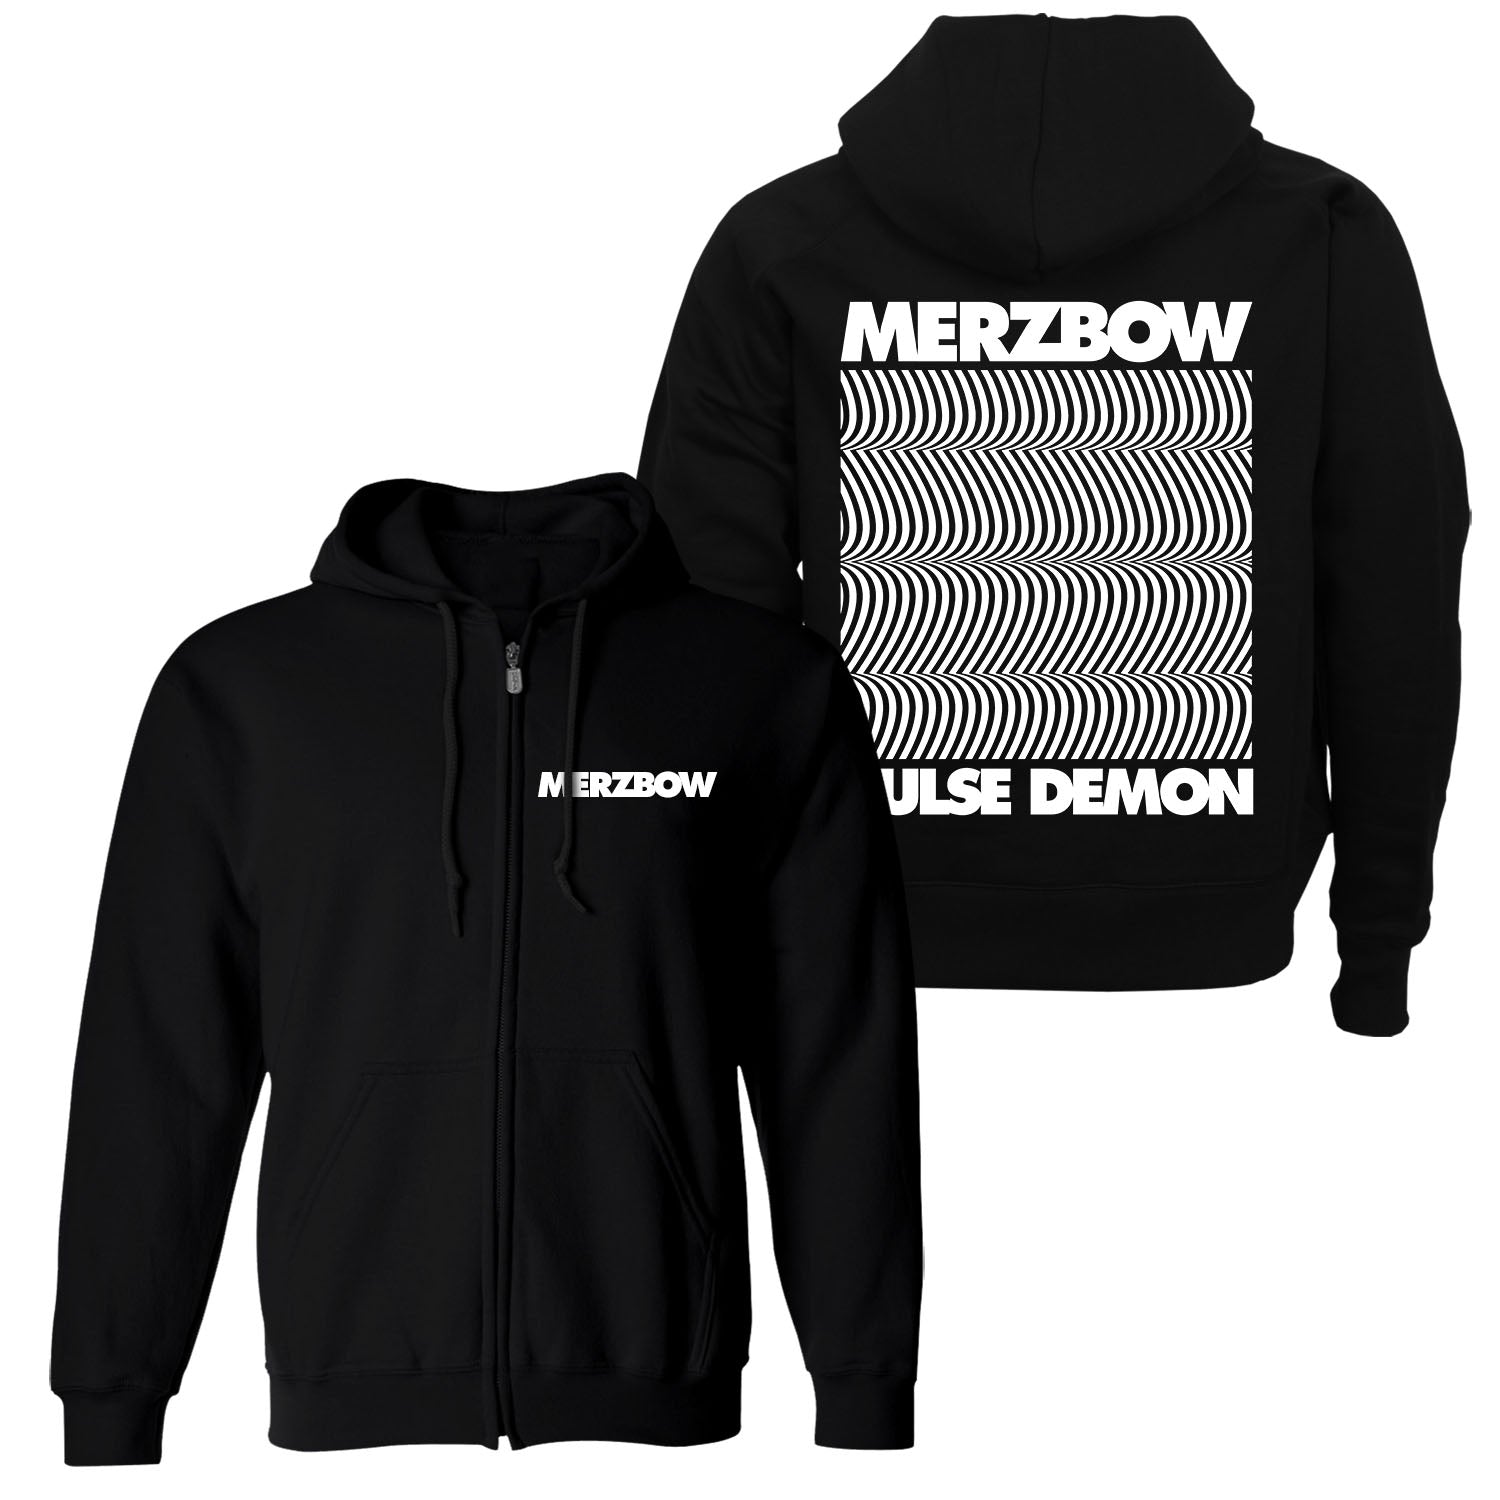 Merzbow "Pulse Demon" Zip Hoodie